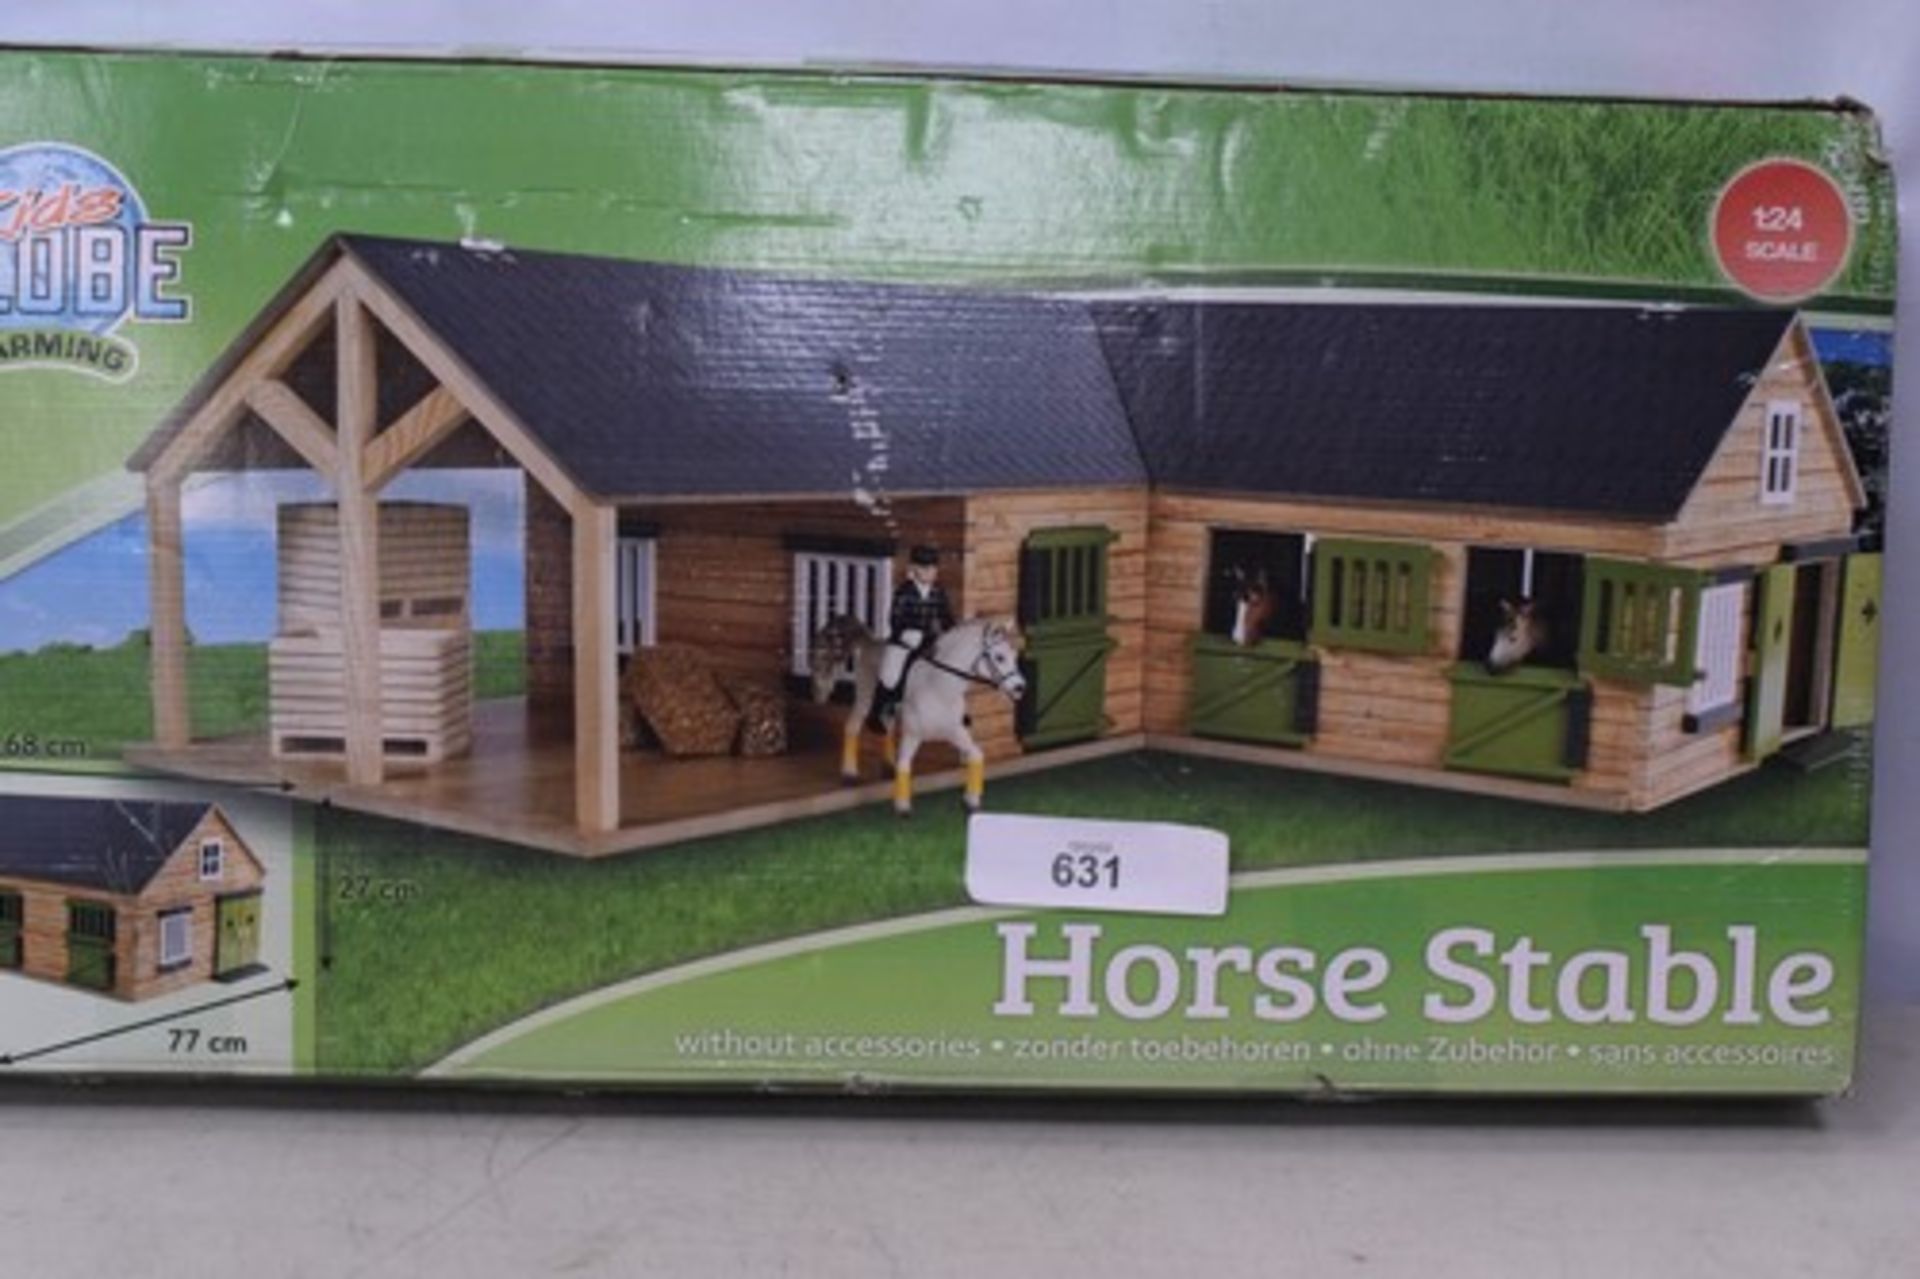 1 x Kids Globe Horse corner stable 1:24 scale code: 8713219362358. -new in tatty box- (E3B)